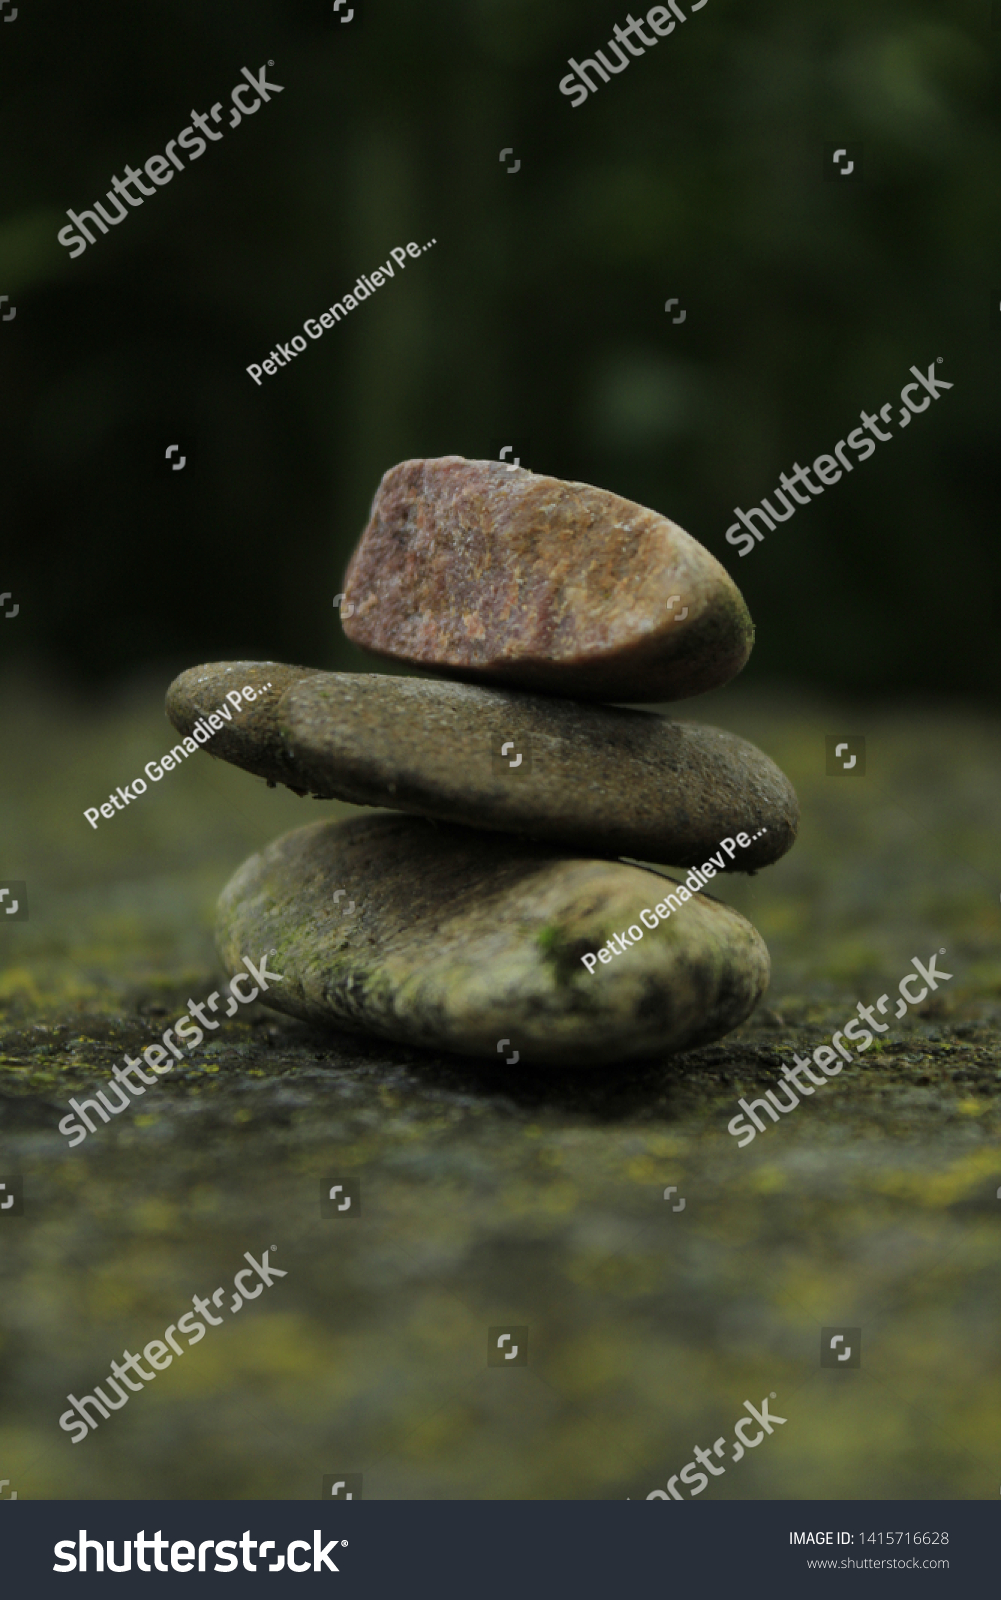 Stone on stone on stone #1415716628